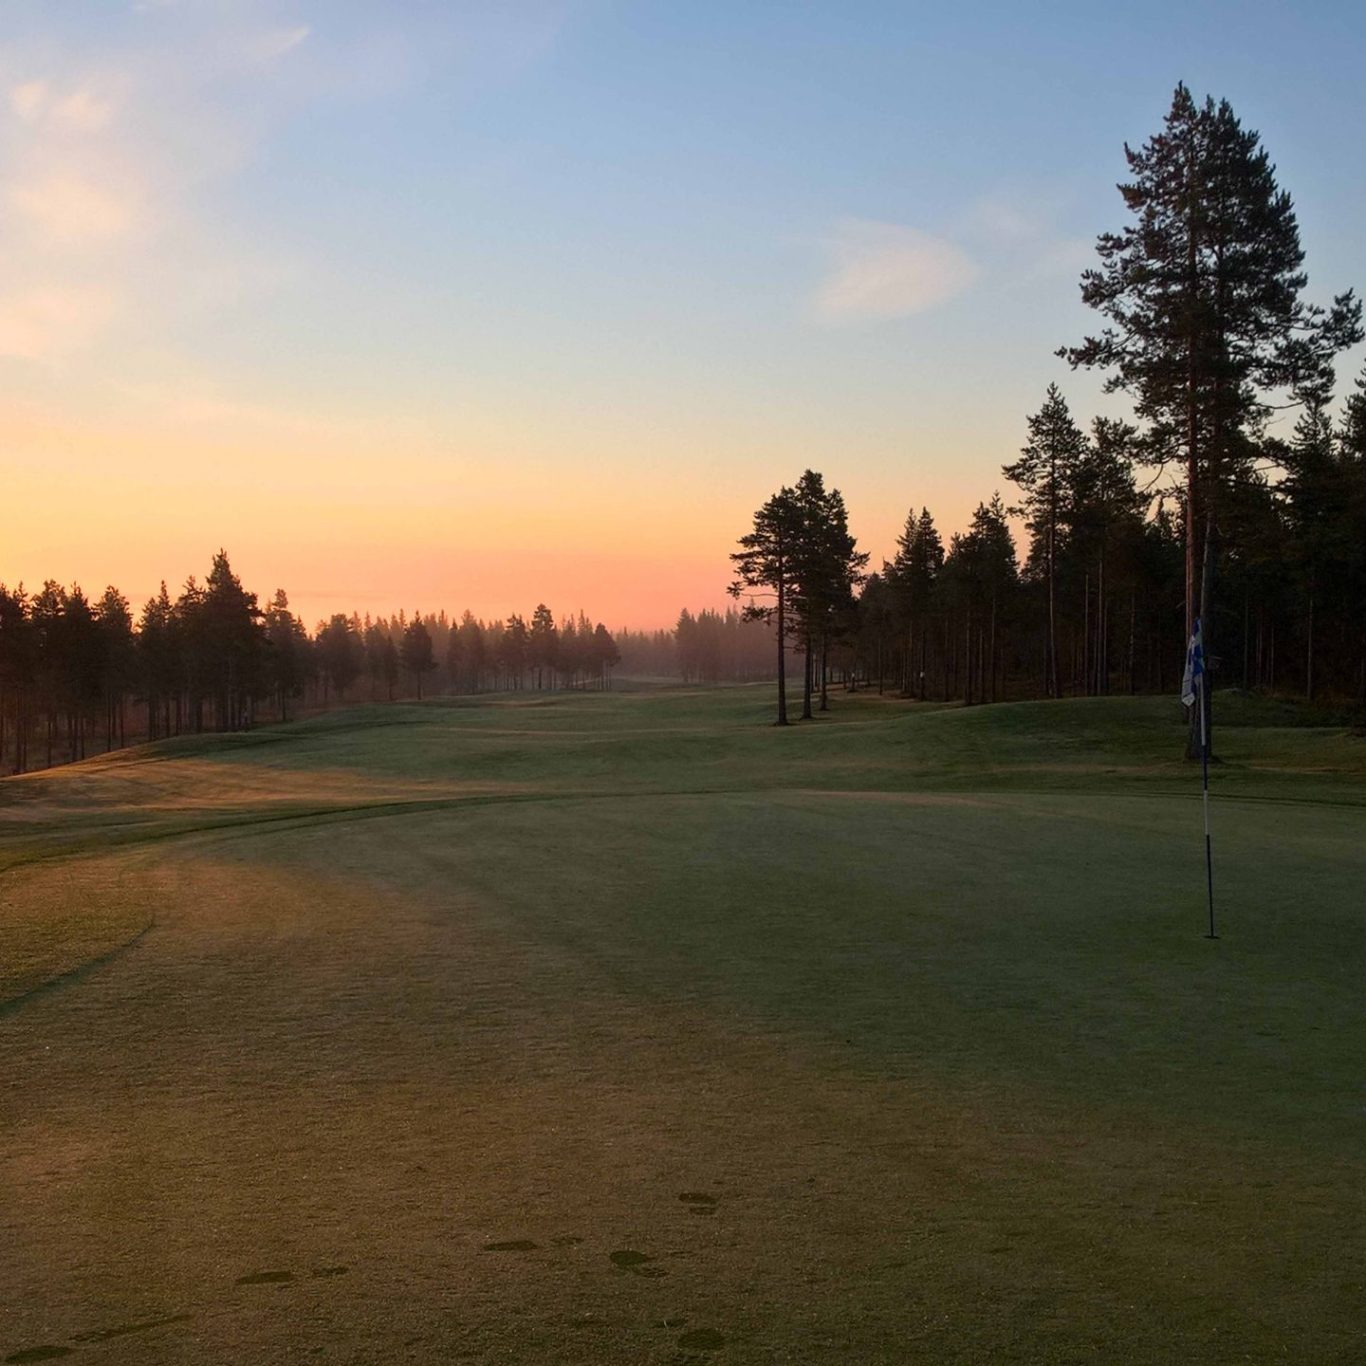 Santa Claus Golf kenttä yöttömän yön aikaan Rovaniemellä, Lapissa